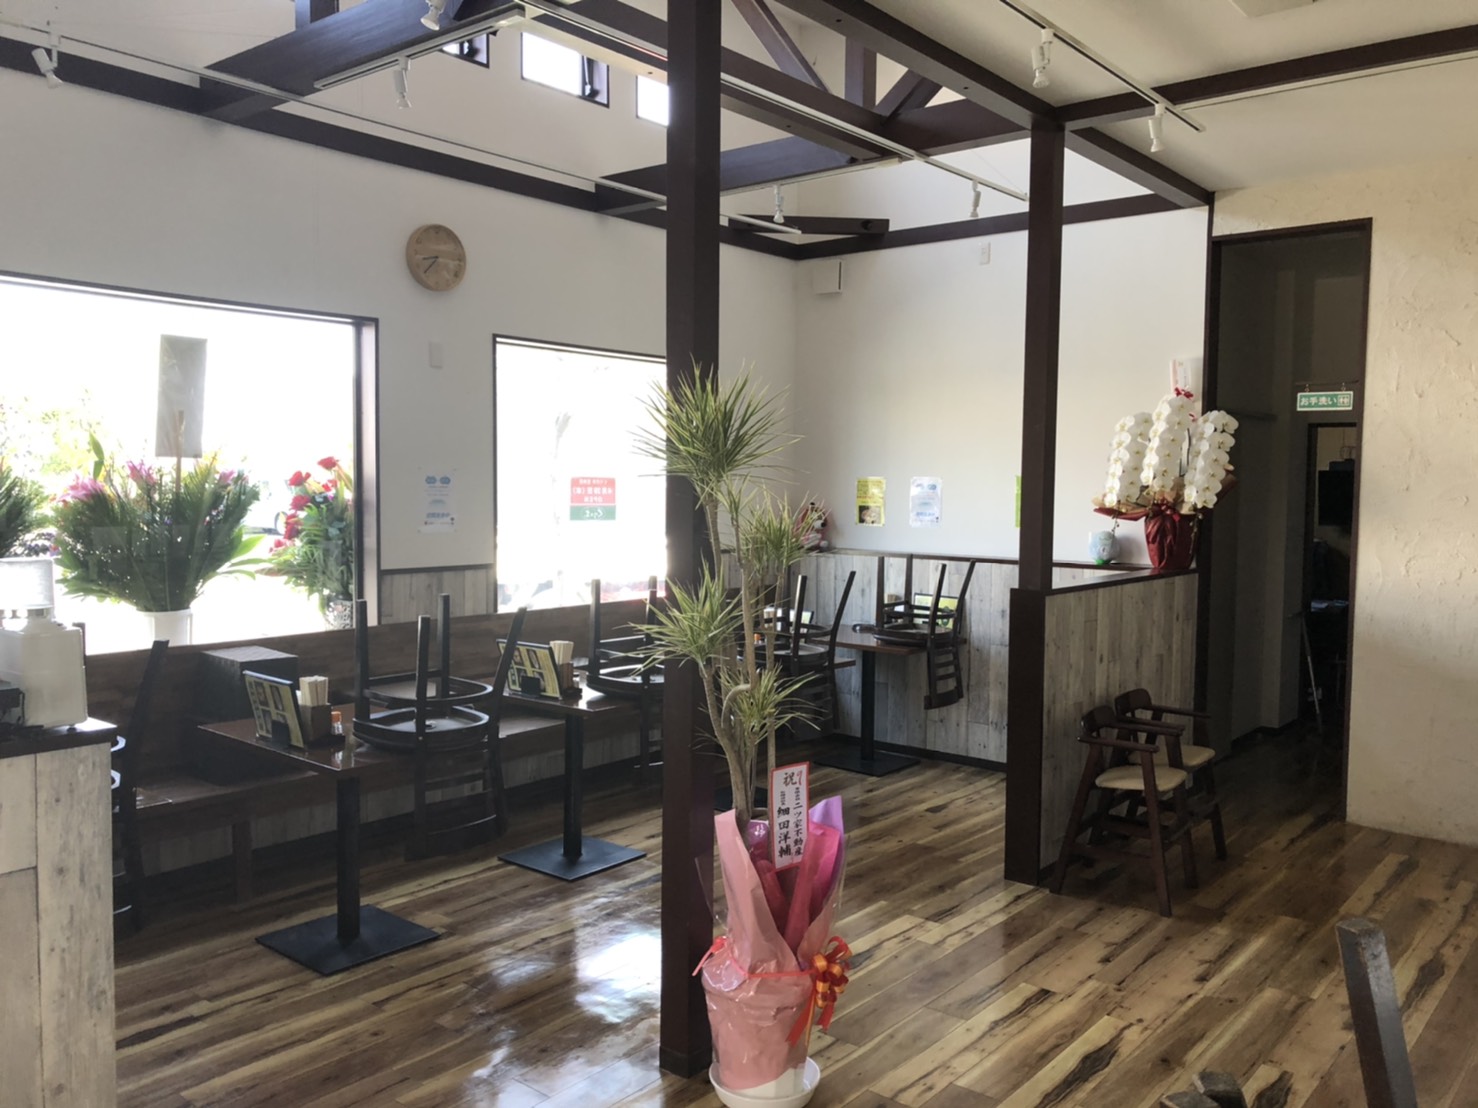 「埼玉×有名ラーメン店」店舗改装工事|木をさりげなく使い暖かい空間に